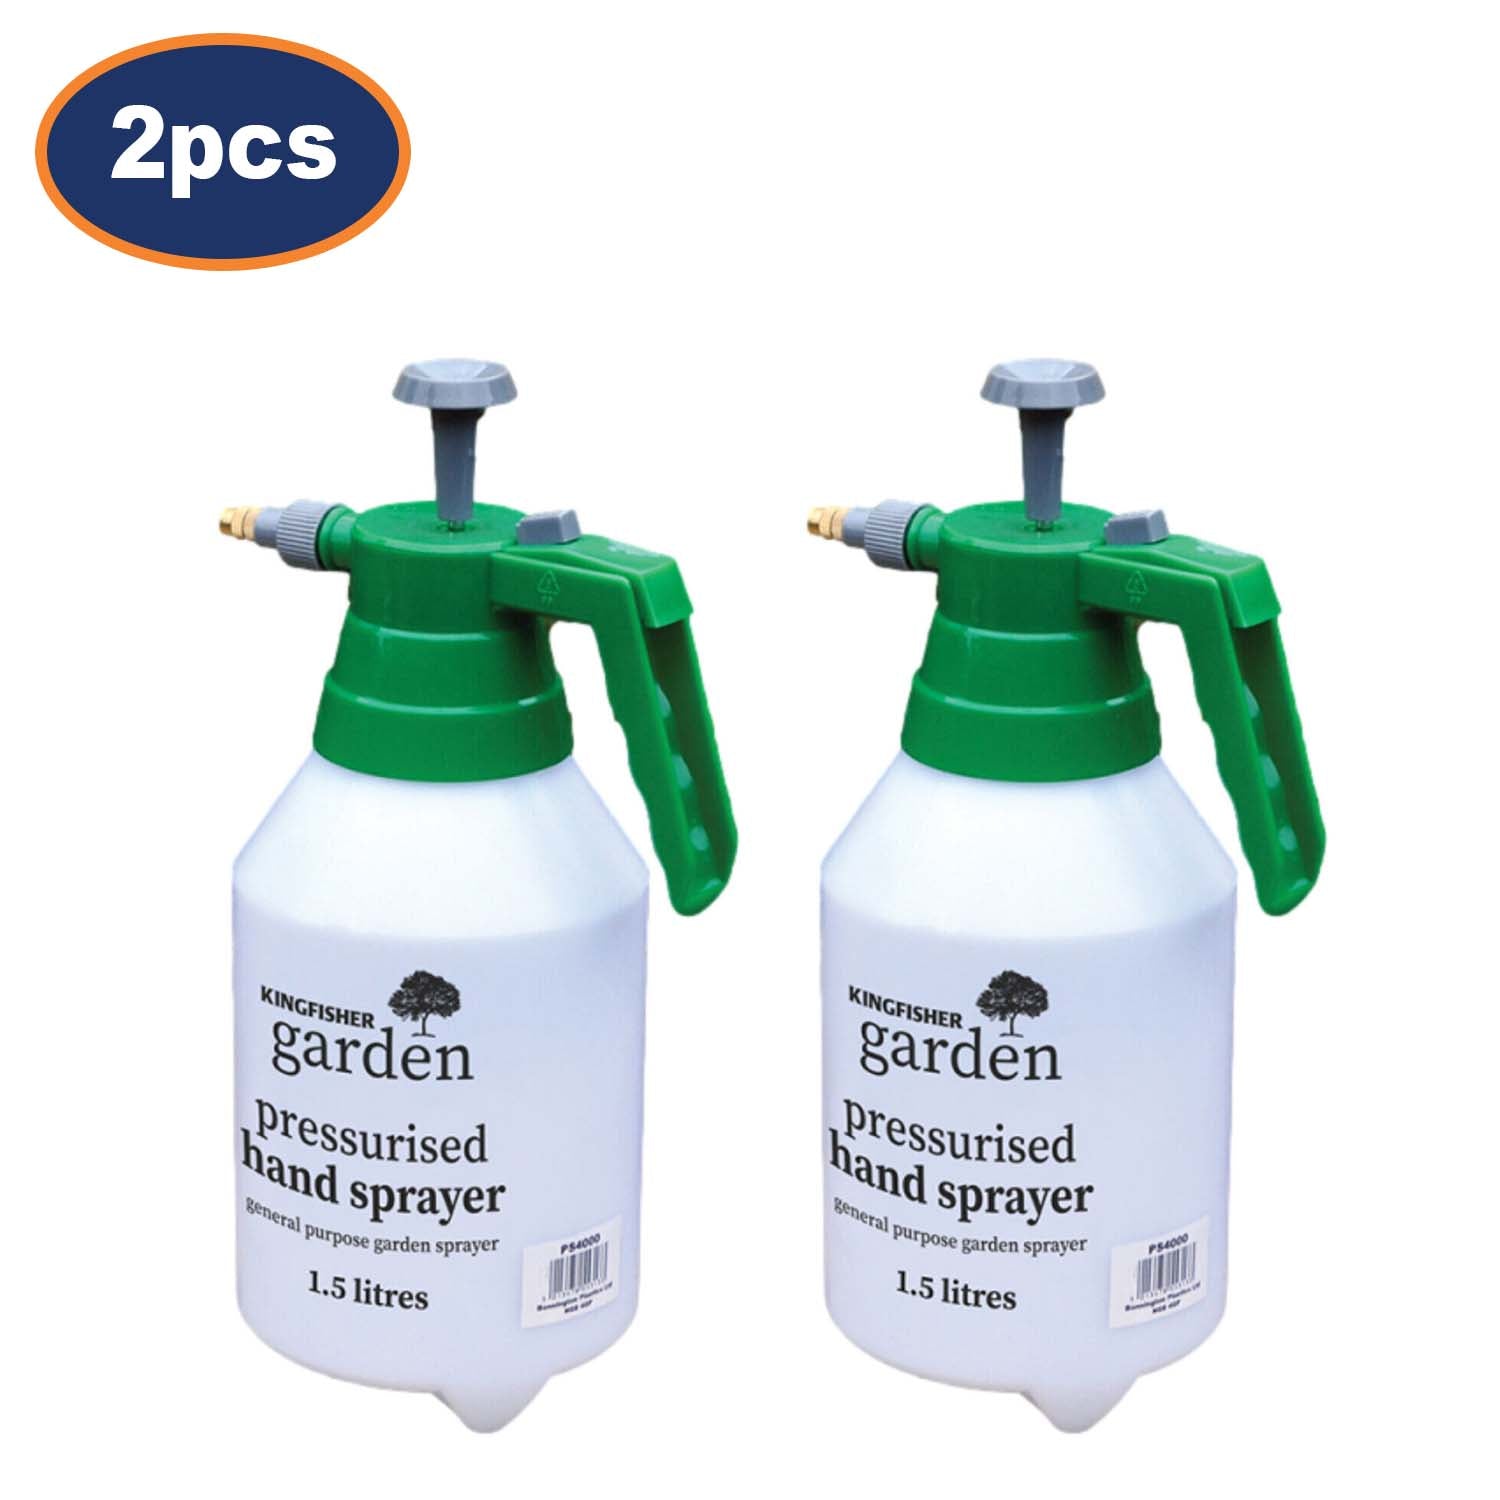 2Pcs Kingfisher 1.5L Sturdy Handheld Pressure Sprayer